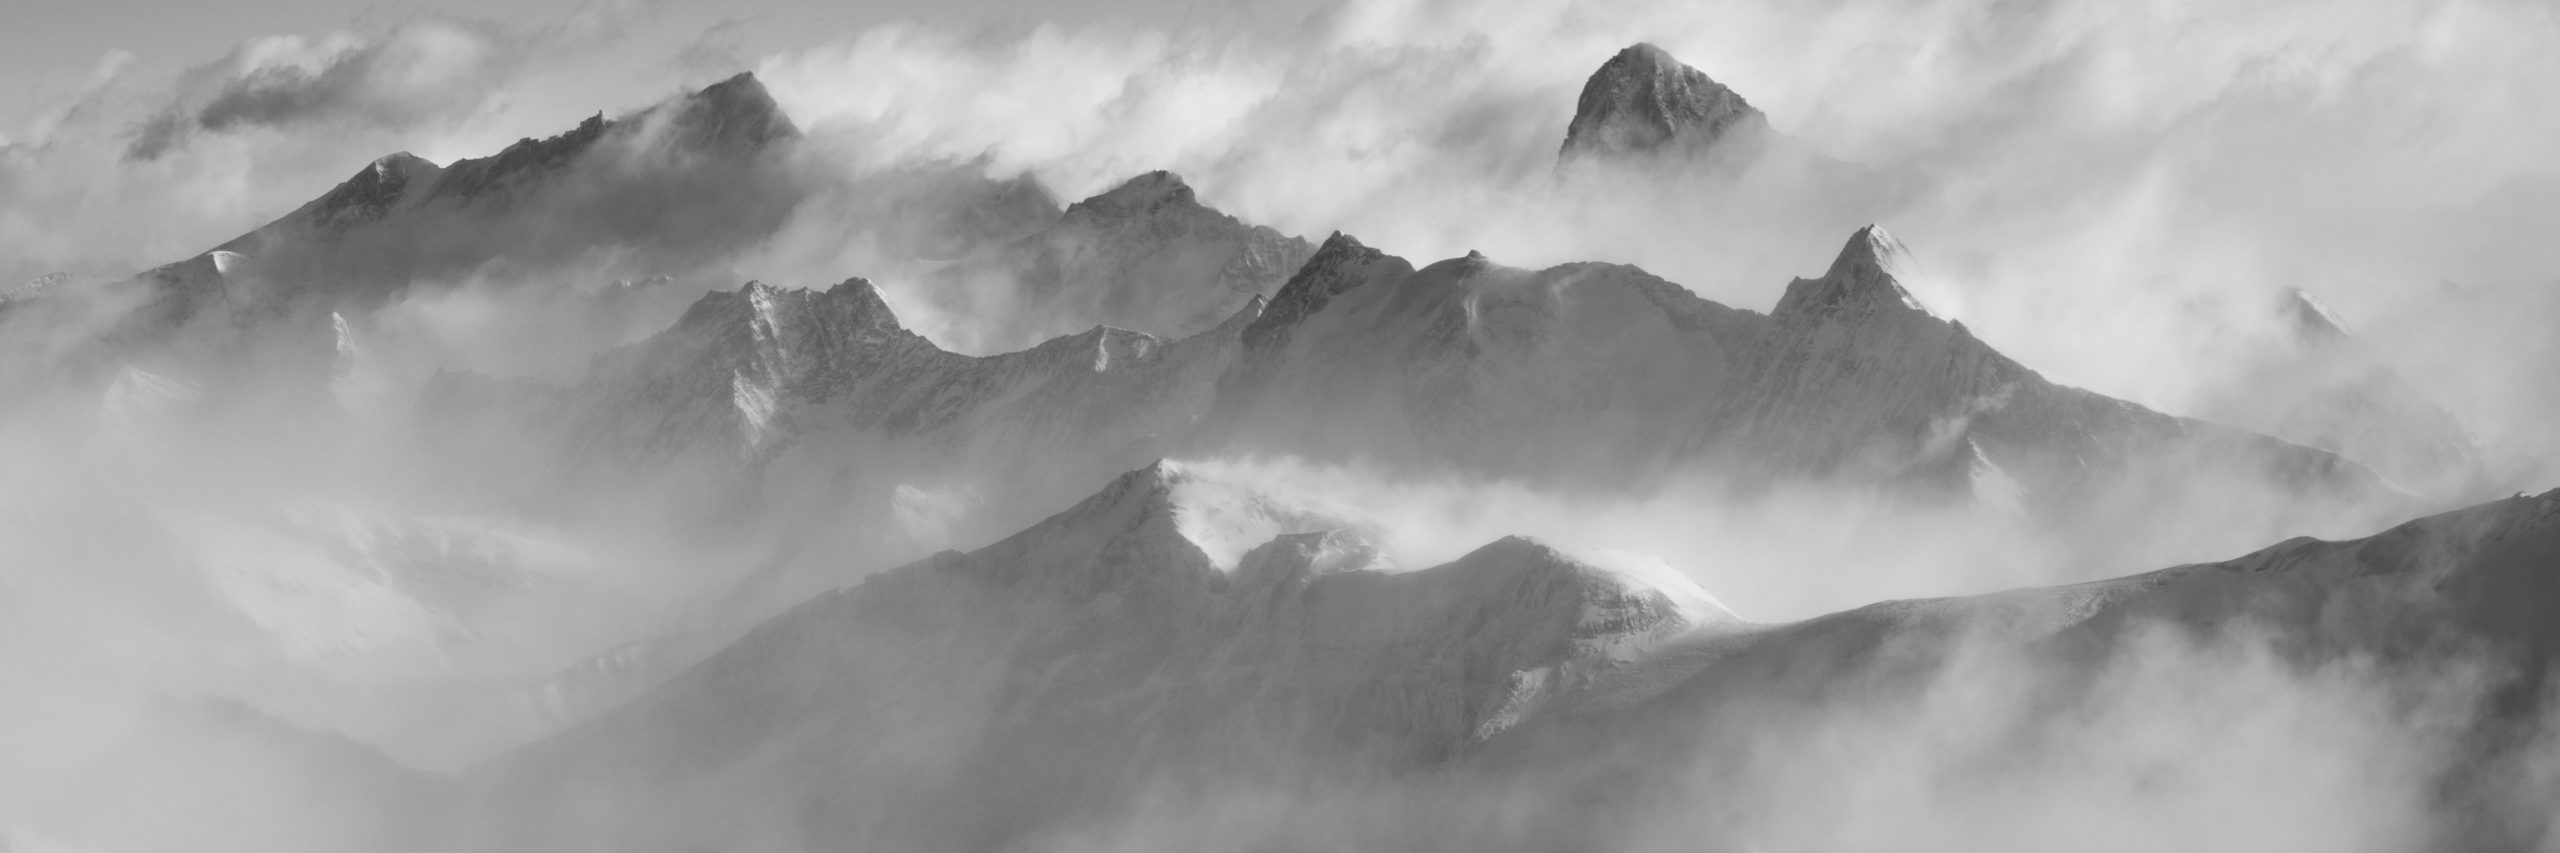 Panorama des sommets de montagne des Alpes Valaisannes en noir et blanc dans une mer de nuages - Crans Montana - Arolla- Dent Blanche - Val d'Hérens